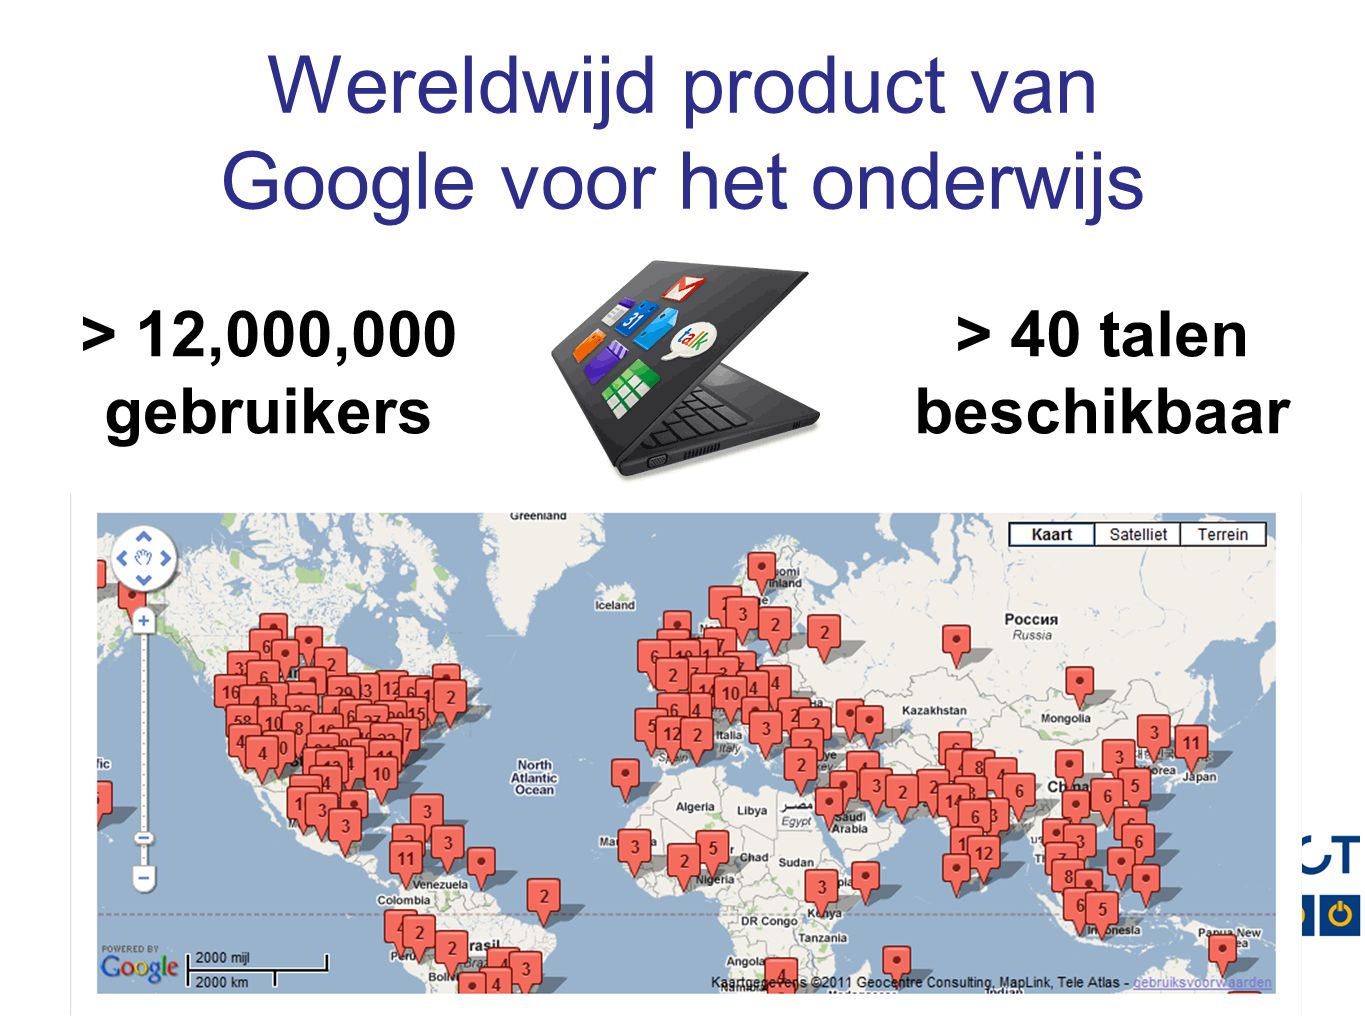 Wereldwijd product van Google voor het onderwijs